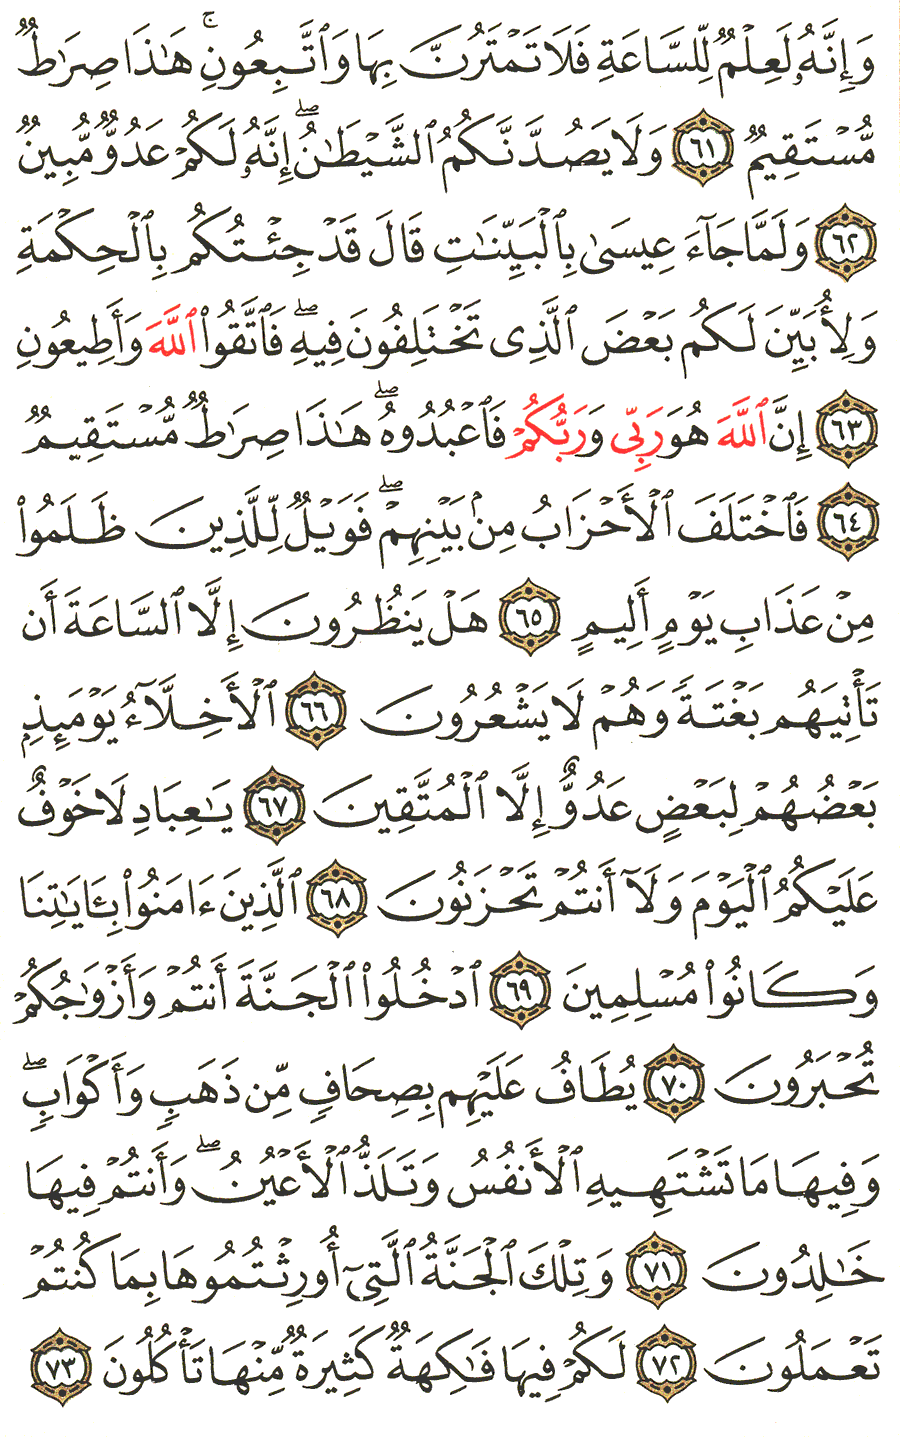 الصفحة 494 من القرآن الكريم